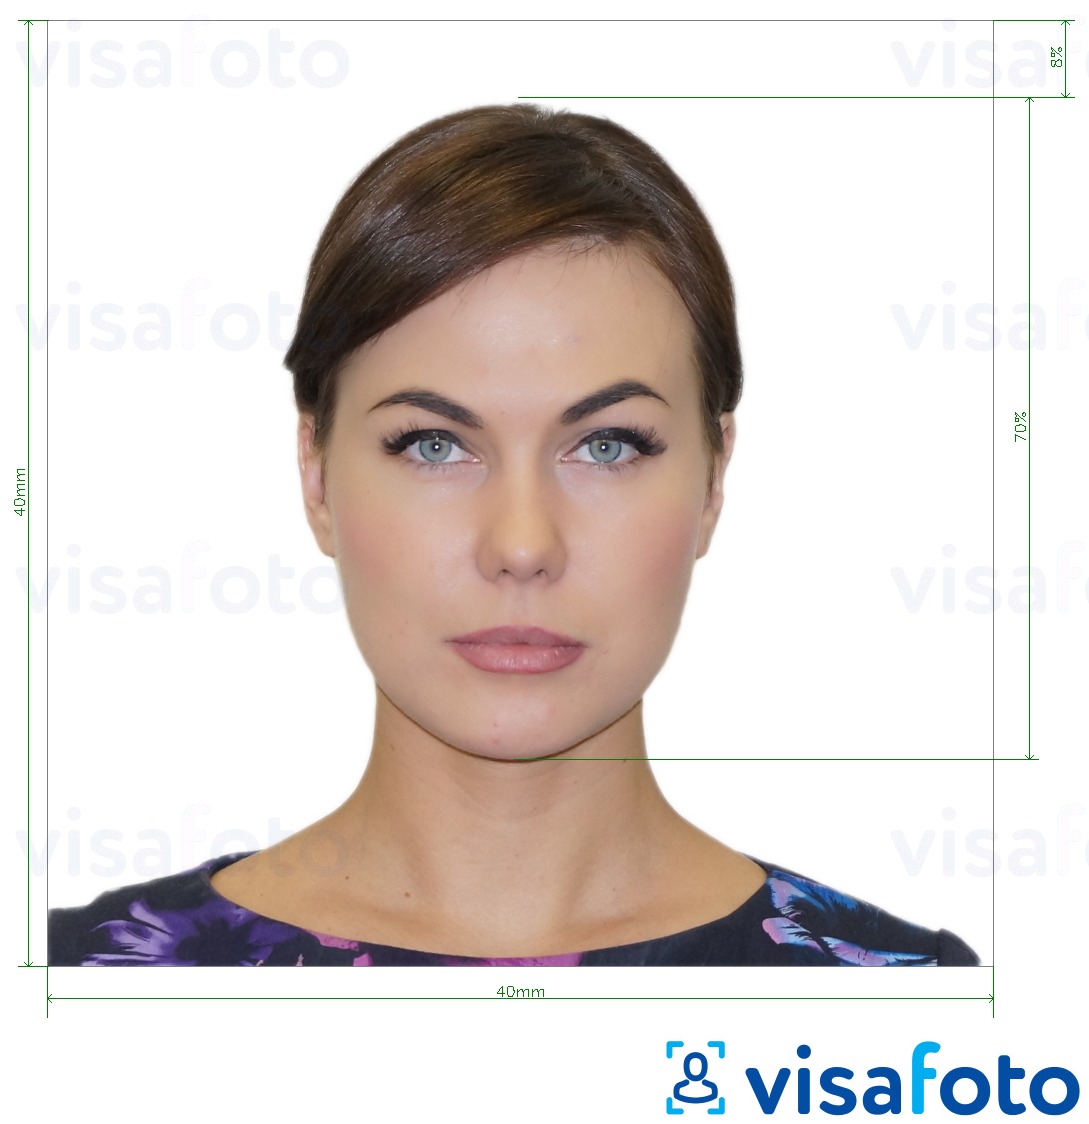 Contoh foto untuk Argentina visa 4x4 cm (40x40 mm) dengan spesifikasi saiz yang tepat.